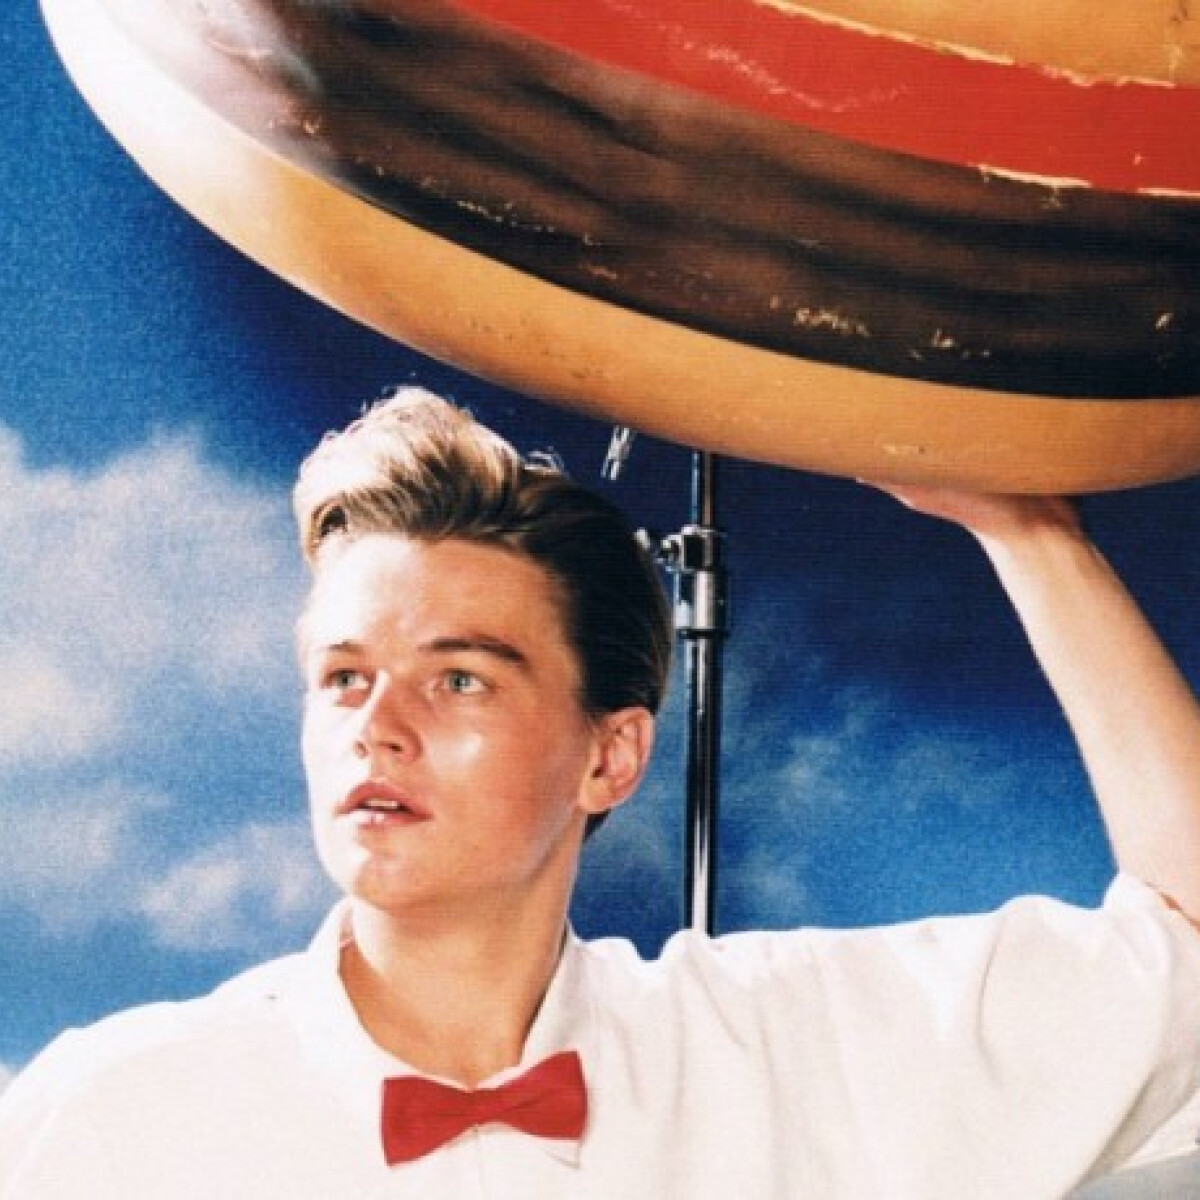 Leonardo DiCaprio beszáll a kajabizniszbe - Vajon milyen ételek gyártásába fektet be a sztár?